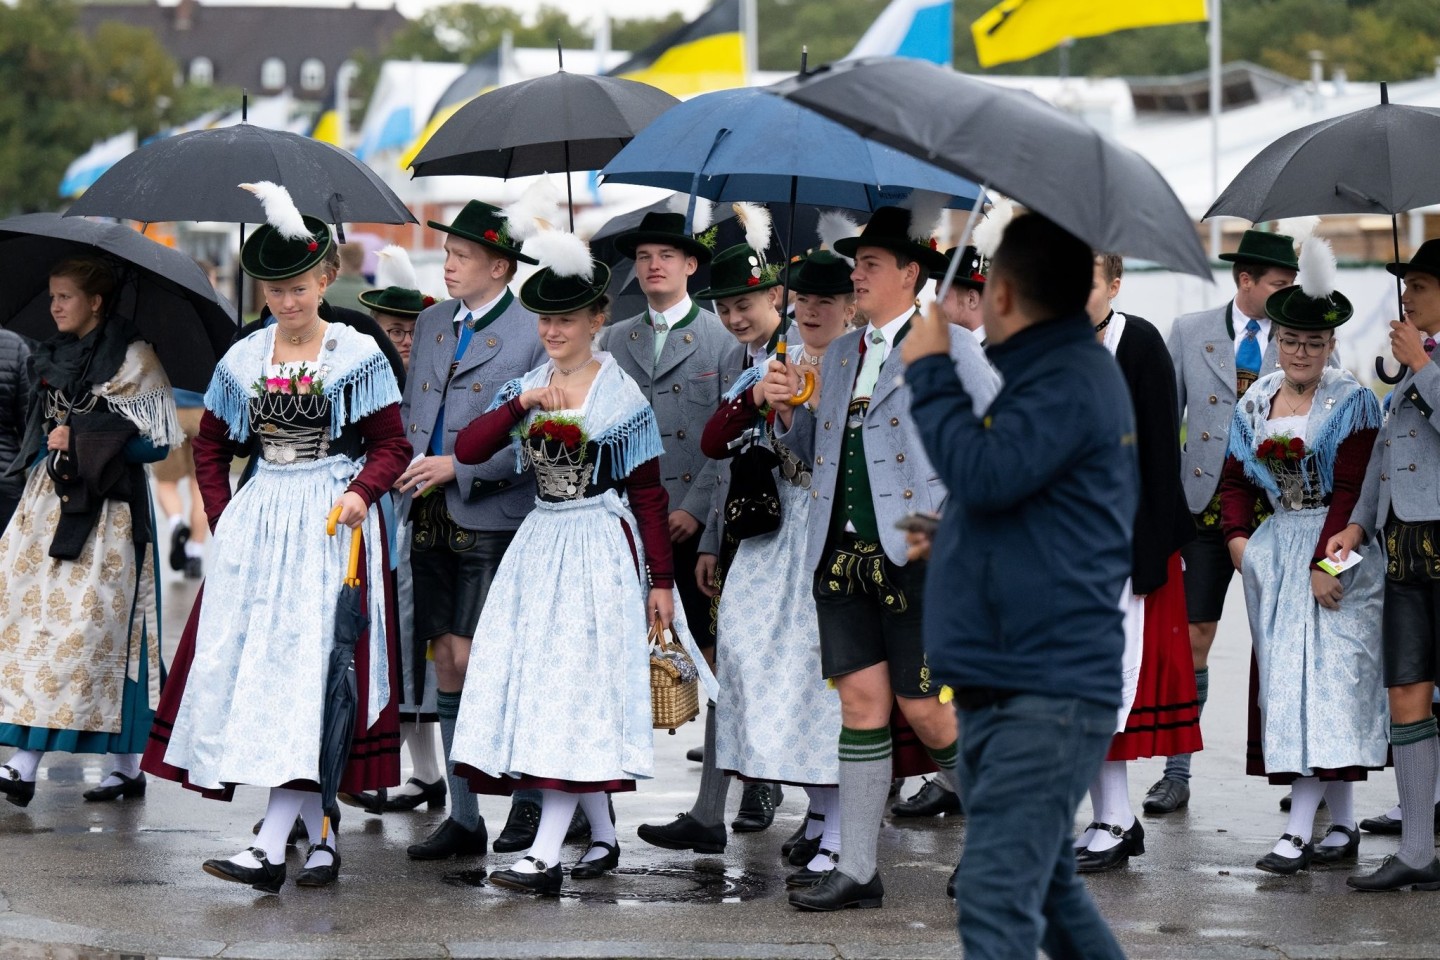 Eine Trachtengruppe geht nach dem traditionellen Trachten- und Schützenzug mit Regenschirmen über das Oktoberfestgelände.